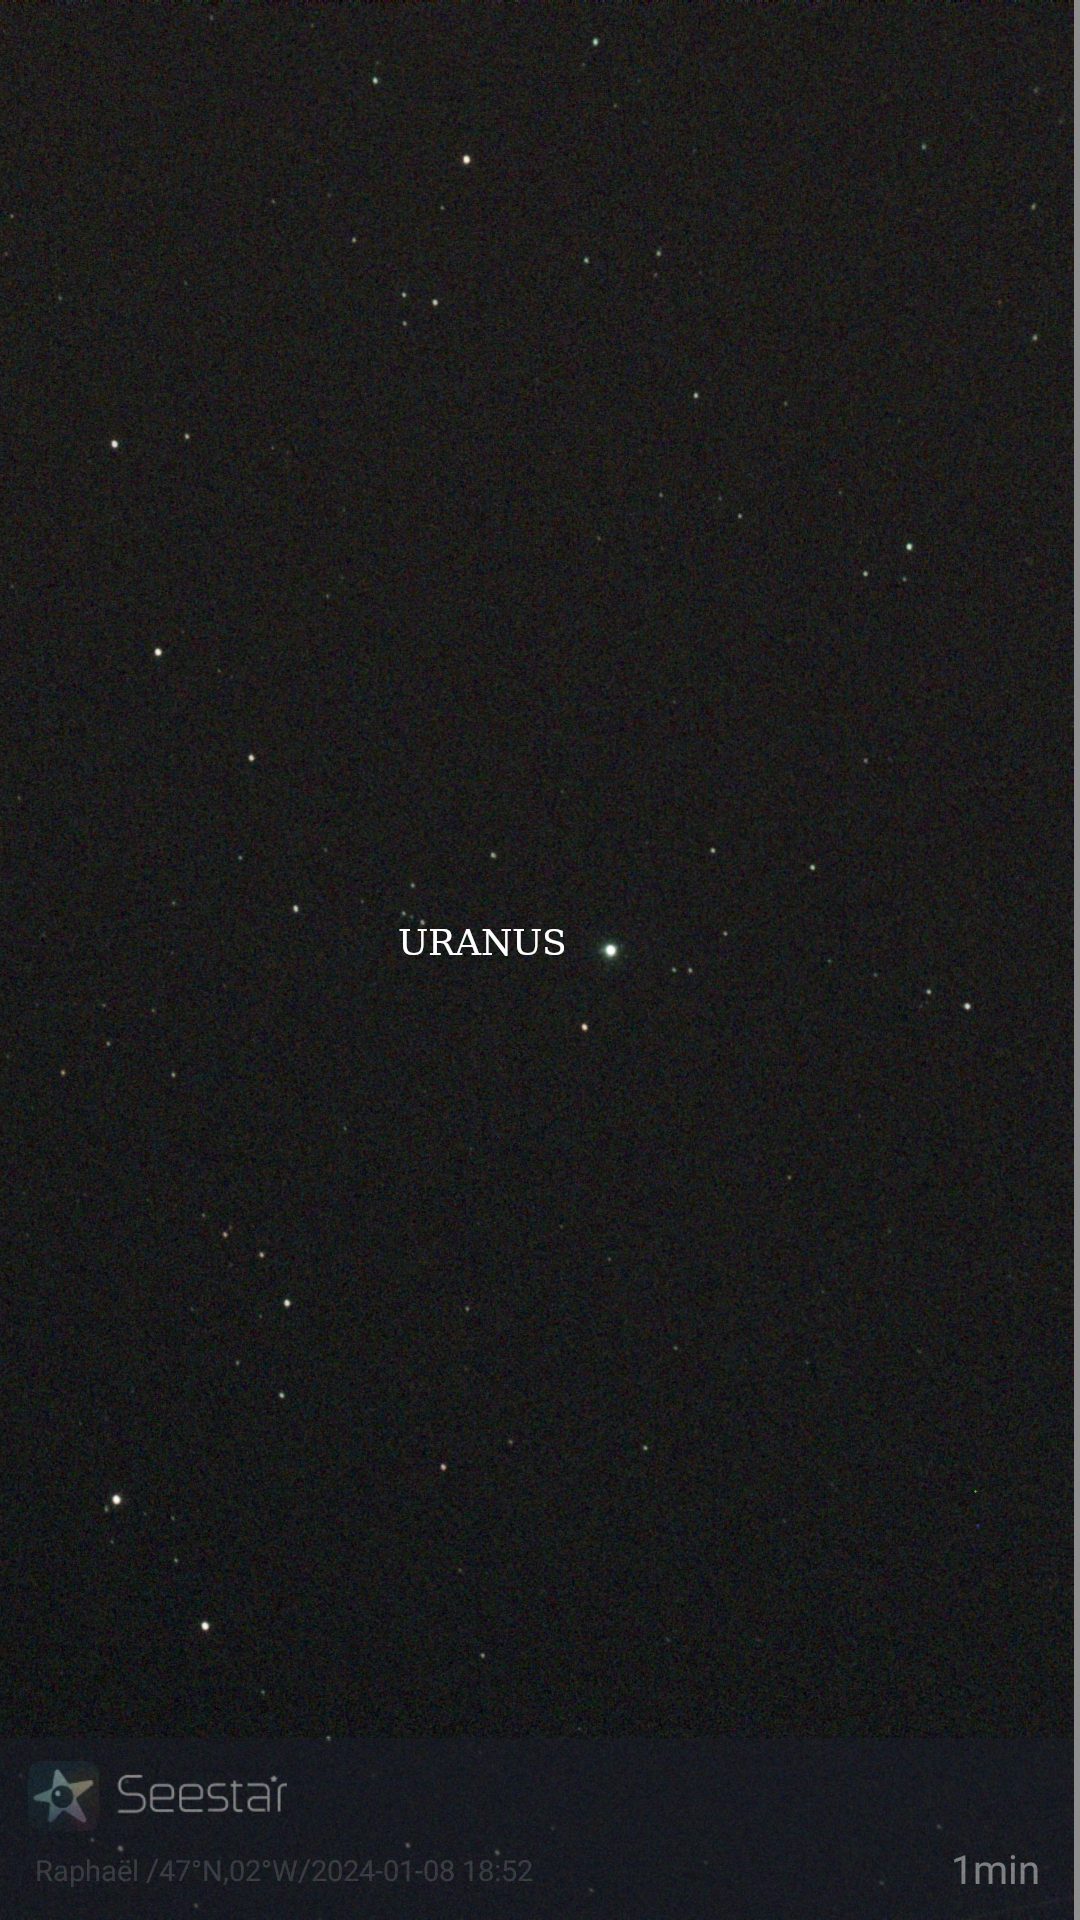 Uranus-texte